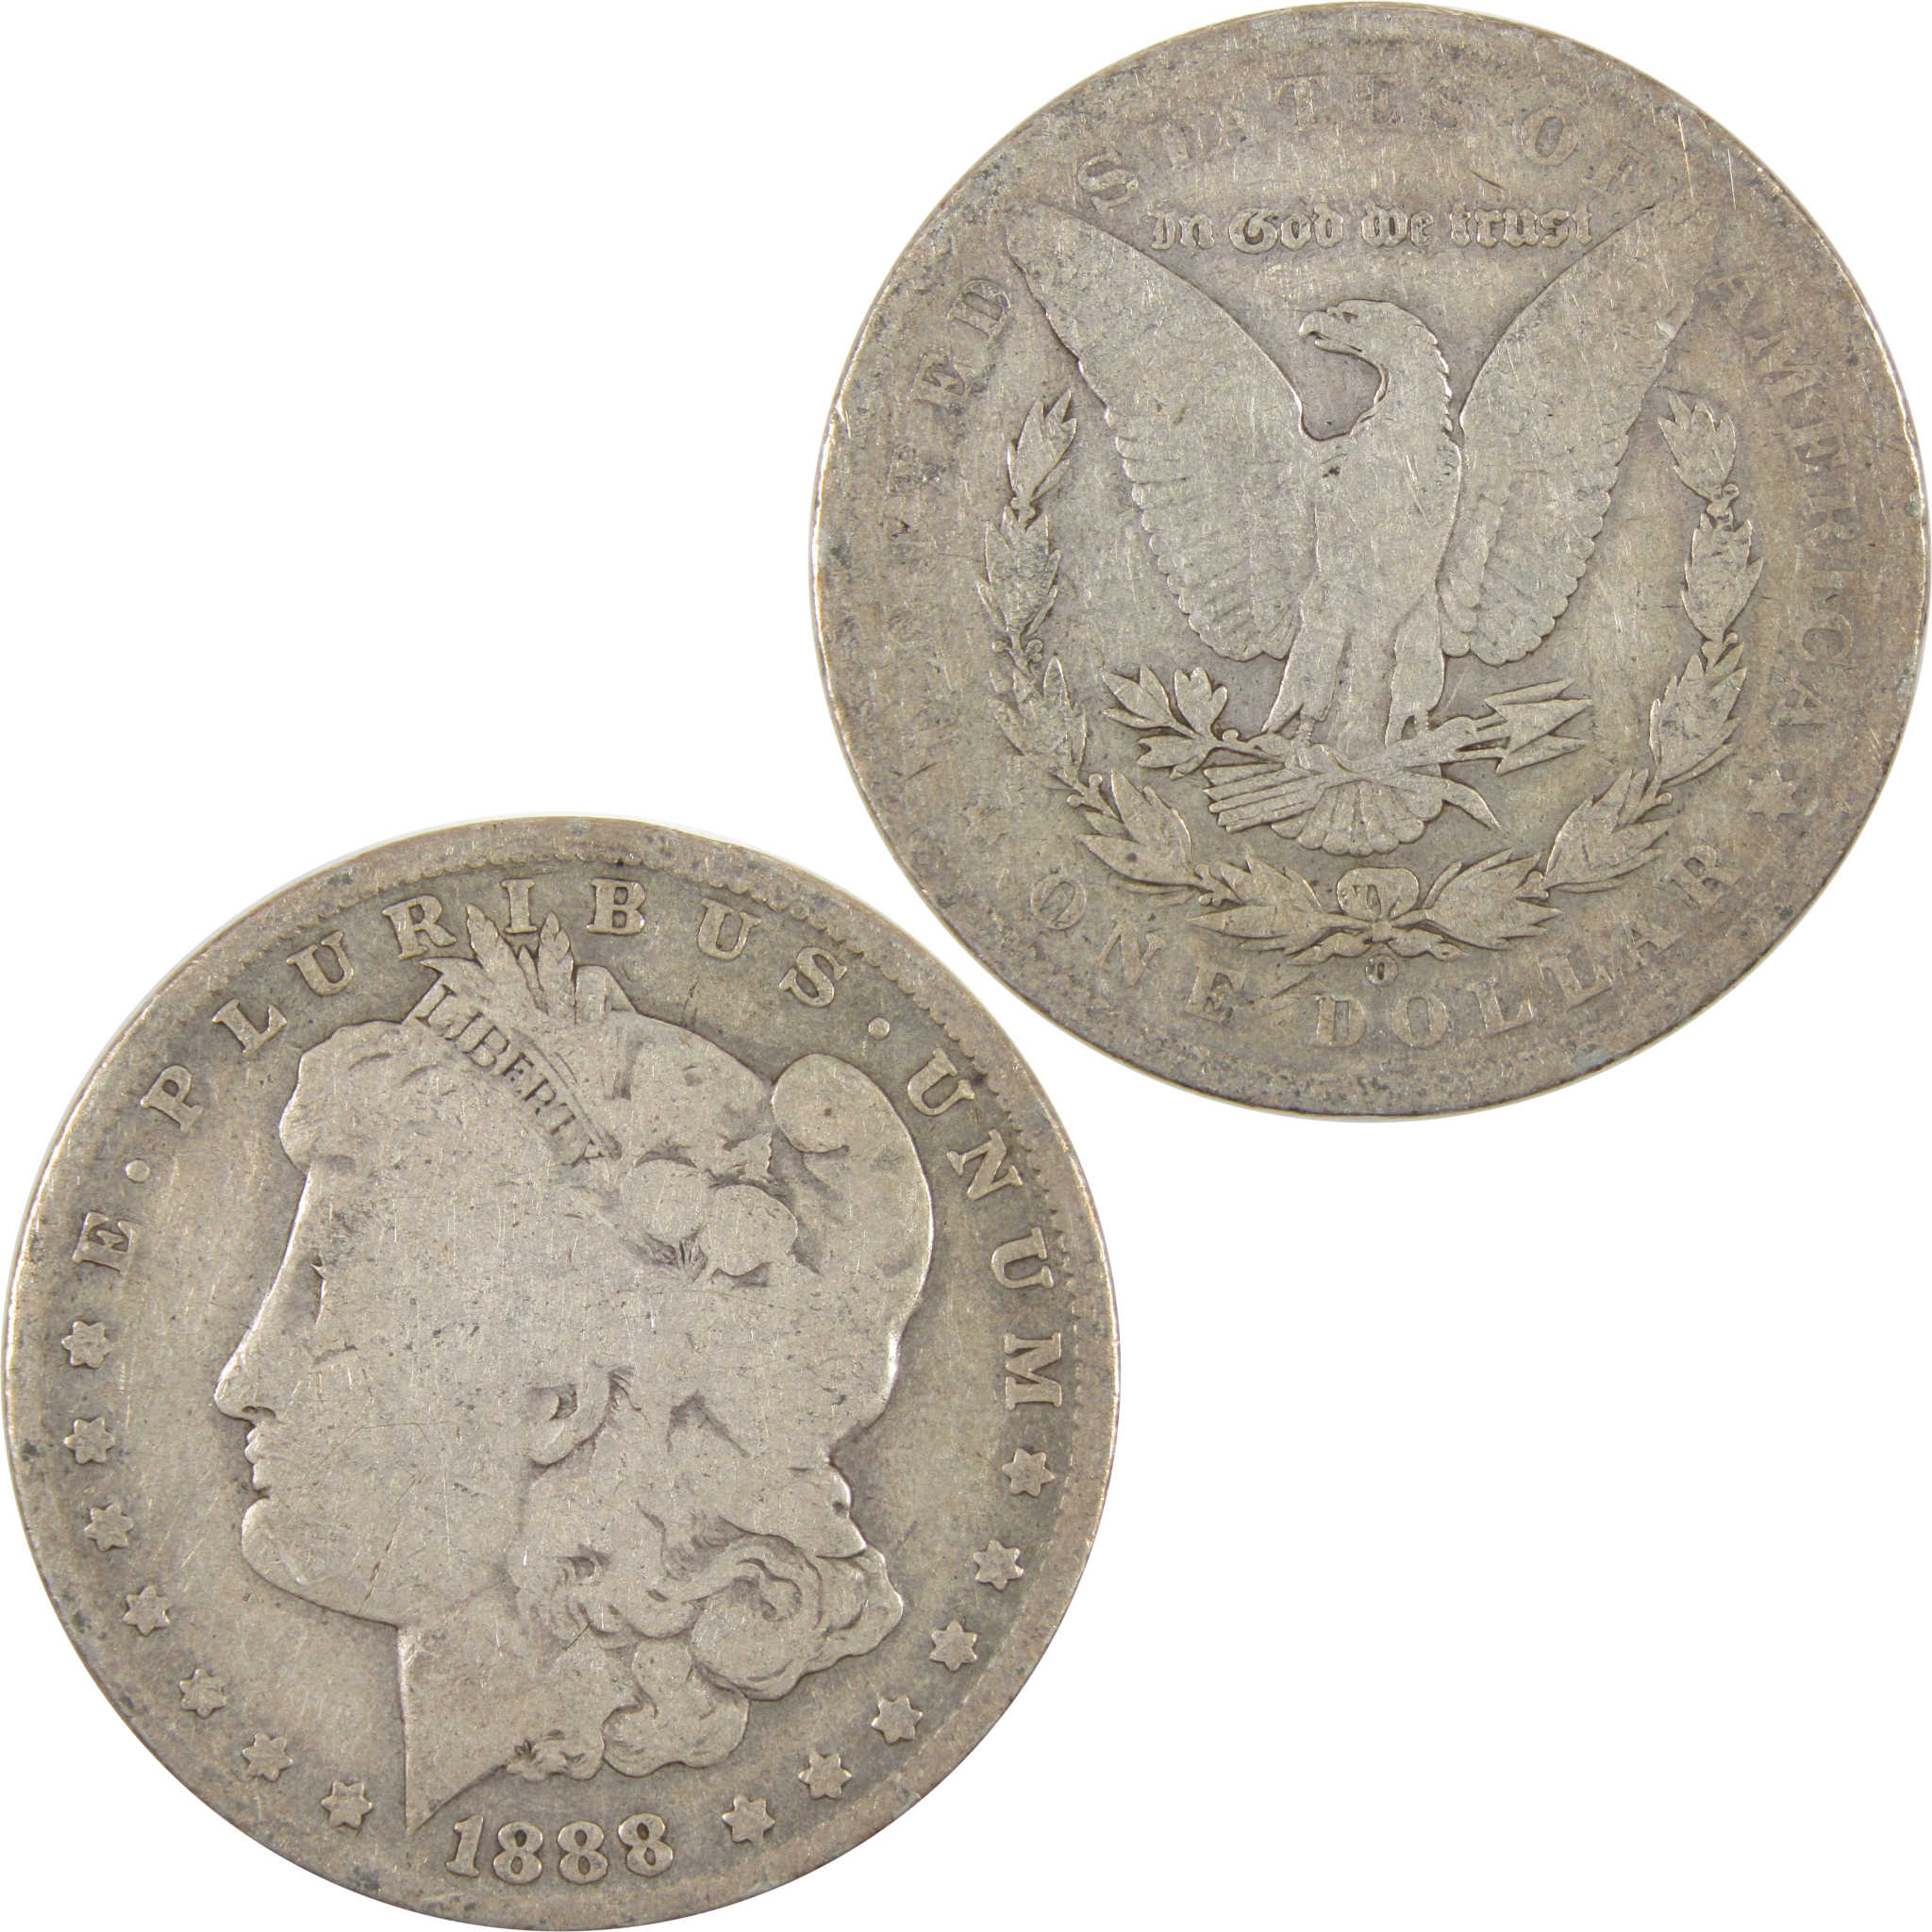 1888 O Hot Lips Morgan Dollar G Good 90% Silver $1 Coin SKU:CPC2882 - Morgan coin - Morgan silver dollar - Morgan silver dollar for sale - Profile Coins &amp; Collectibles